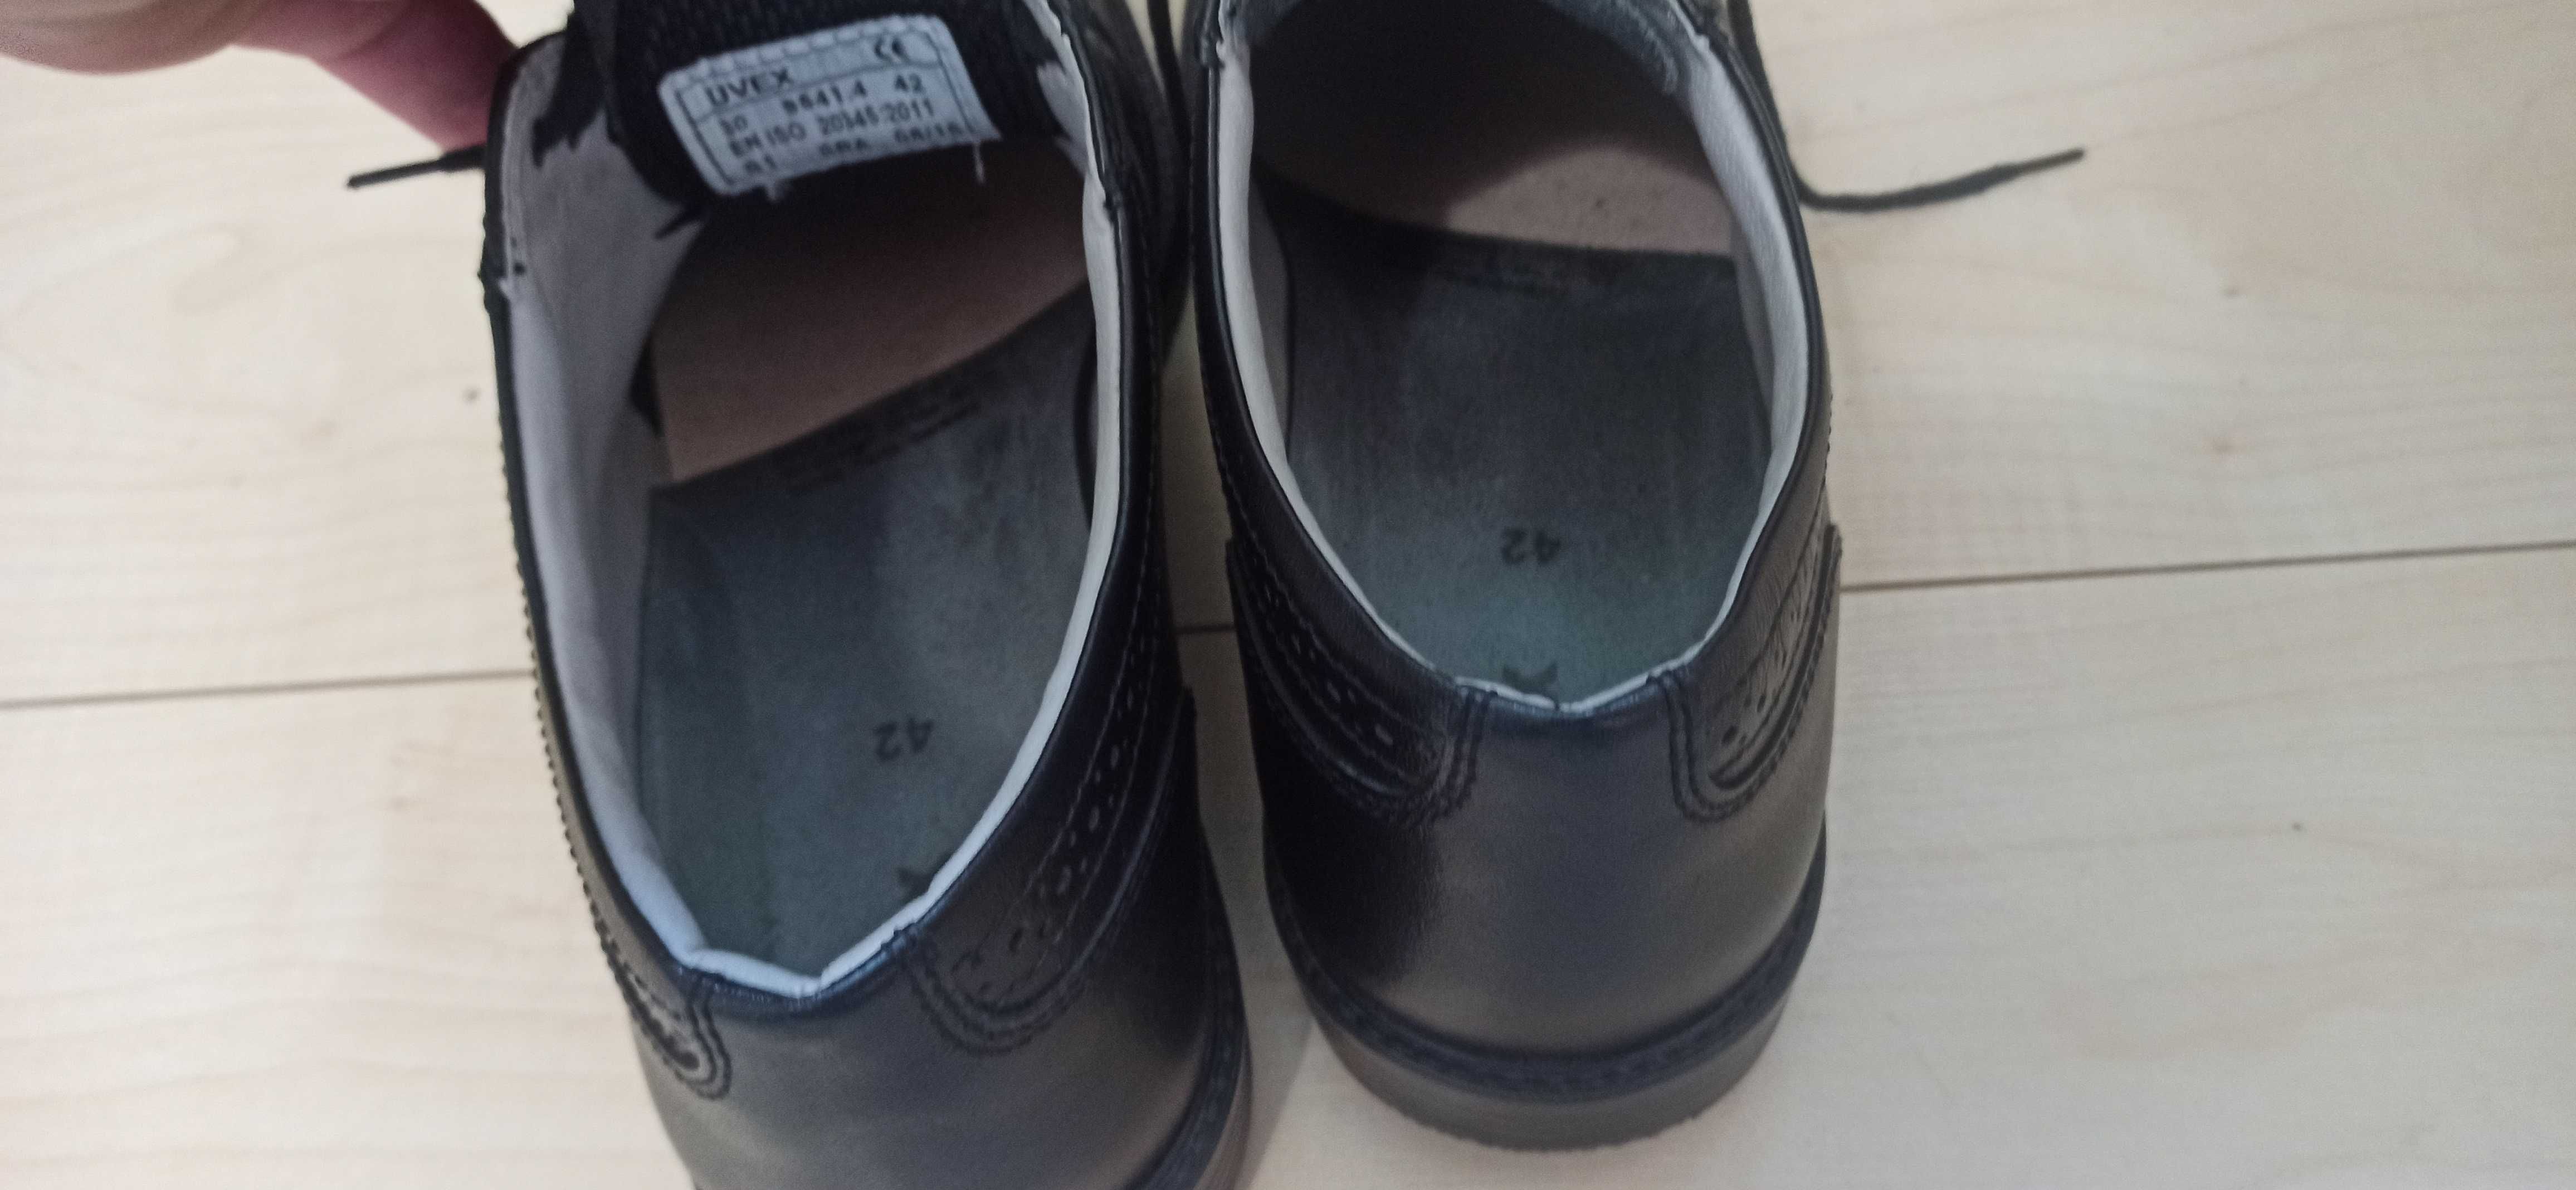 Męskie bezpieczne buty robocze Uvex Office ESD SRA 42 27 cm jak nowe